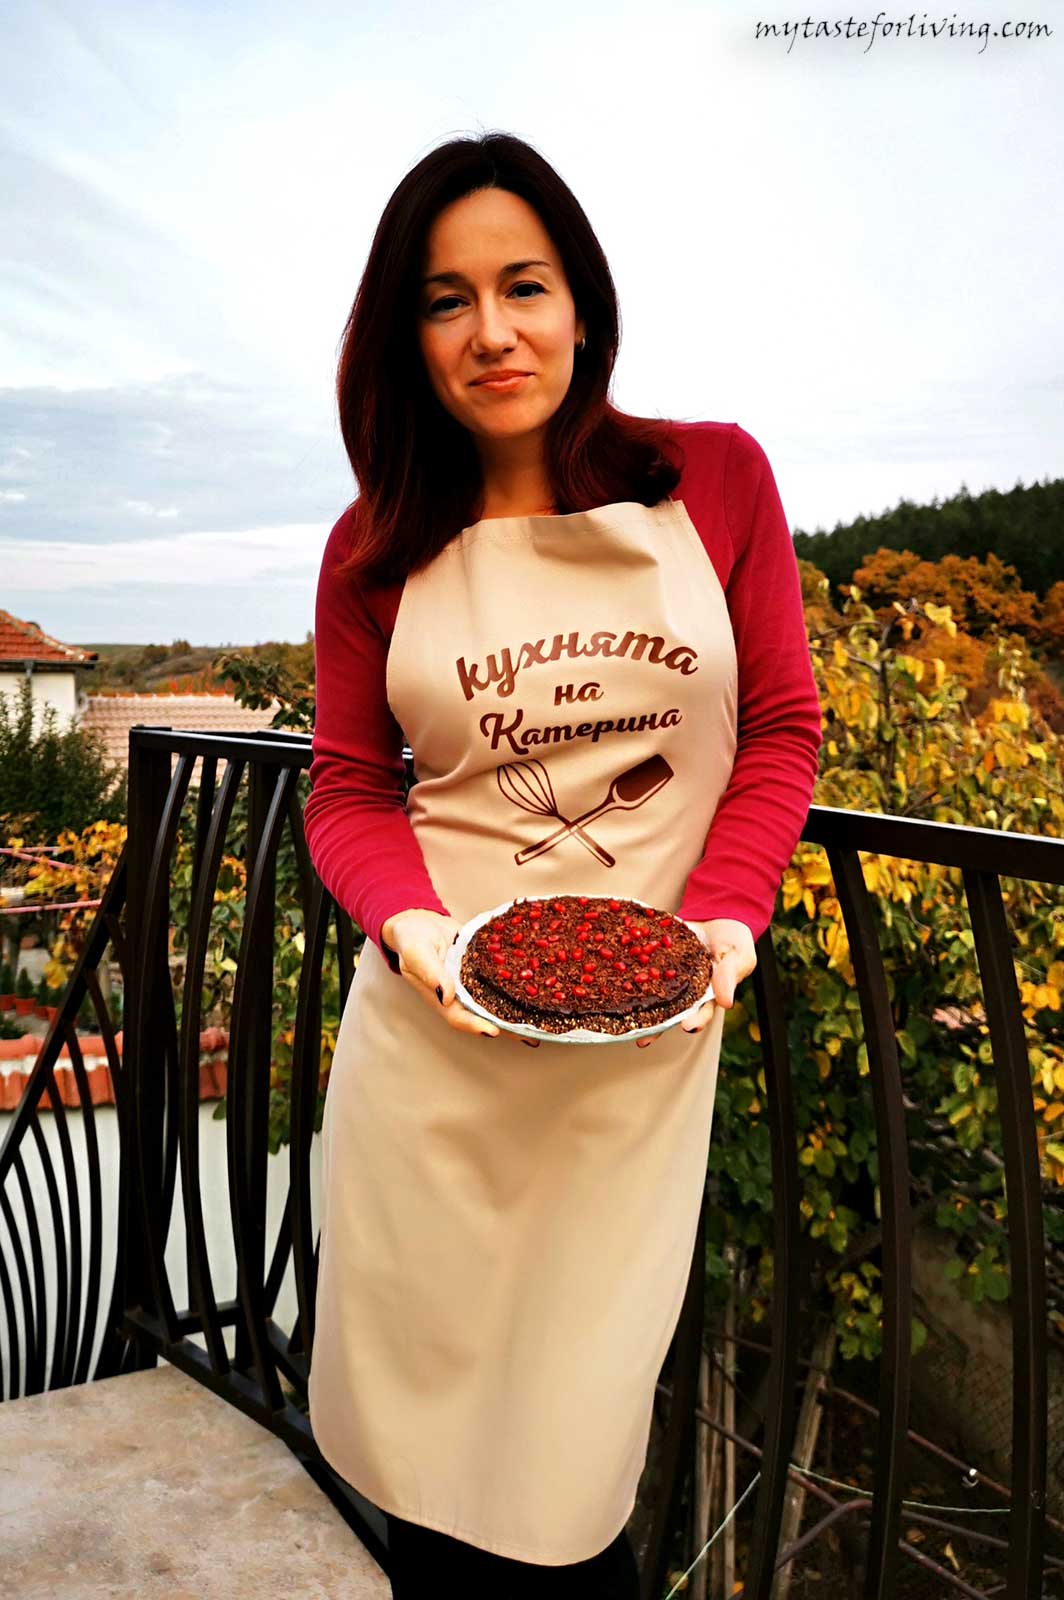 Казвам се Катерина Чолакова, а това е моят сайт, в който може да намерите интересни, бързи и вкусни рецепти, както и красиви и зебележителни места в България и не само, които би си струвало да се посетят. Надявам се да бъда полезна!